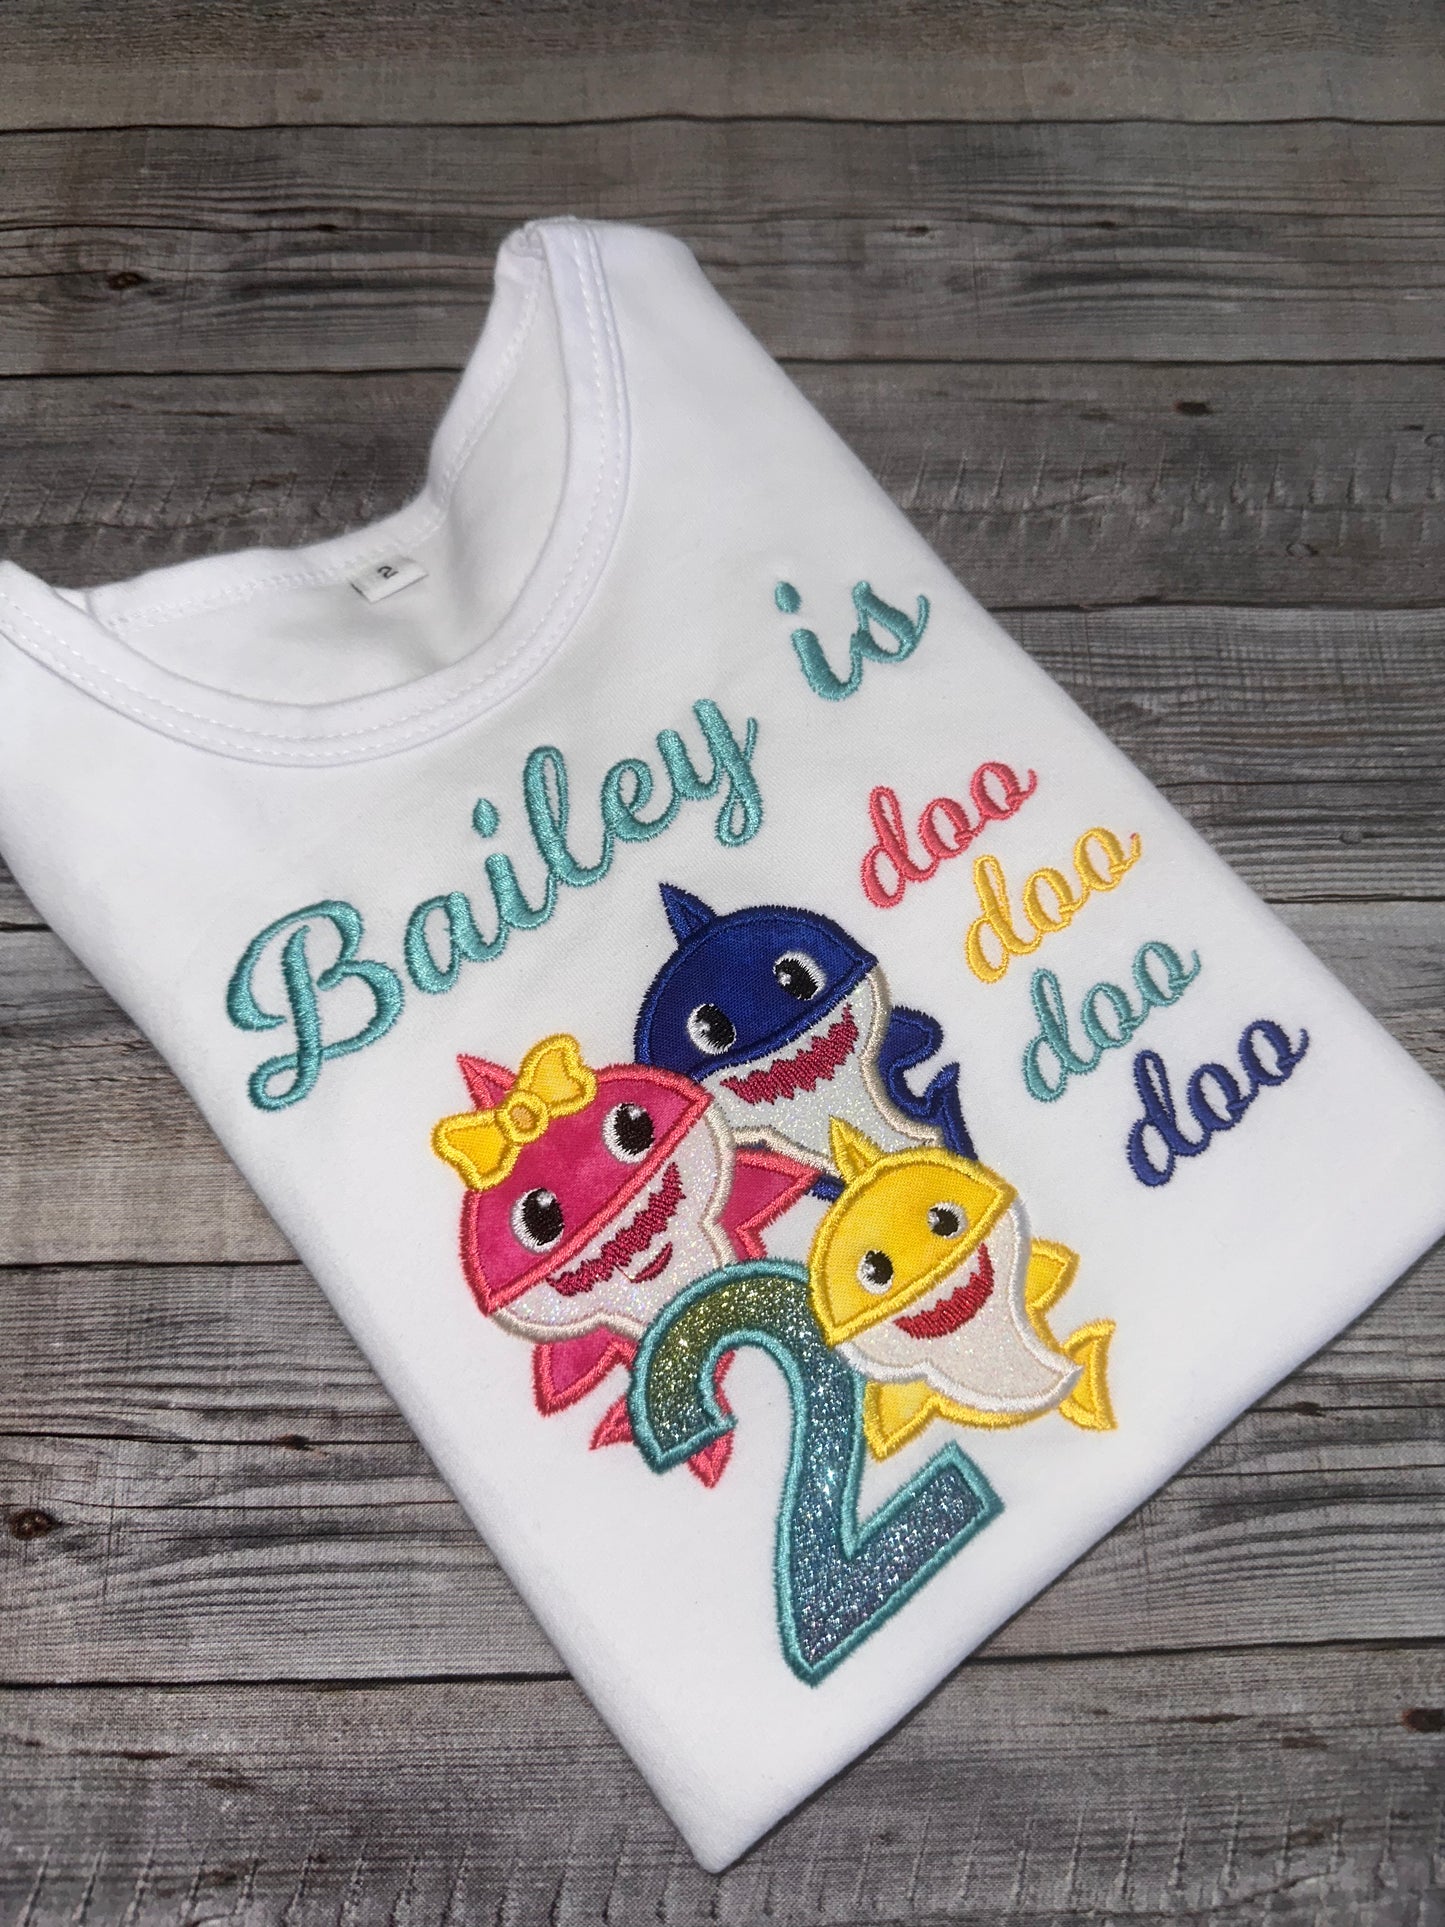 Baby shark family birthday shirt